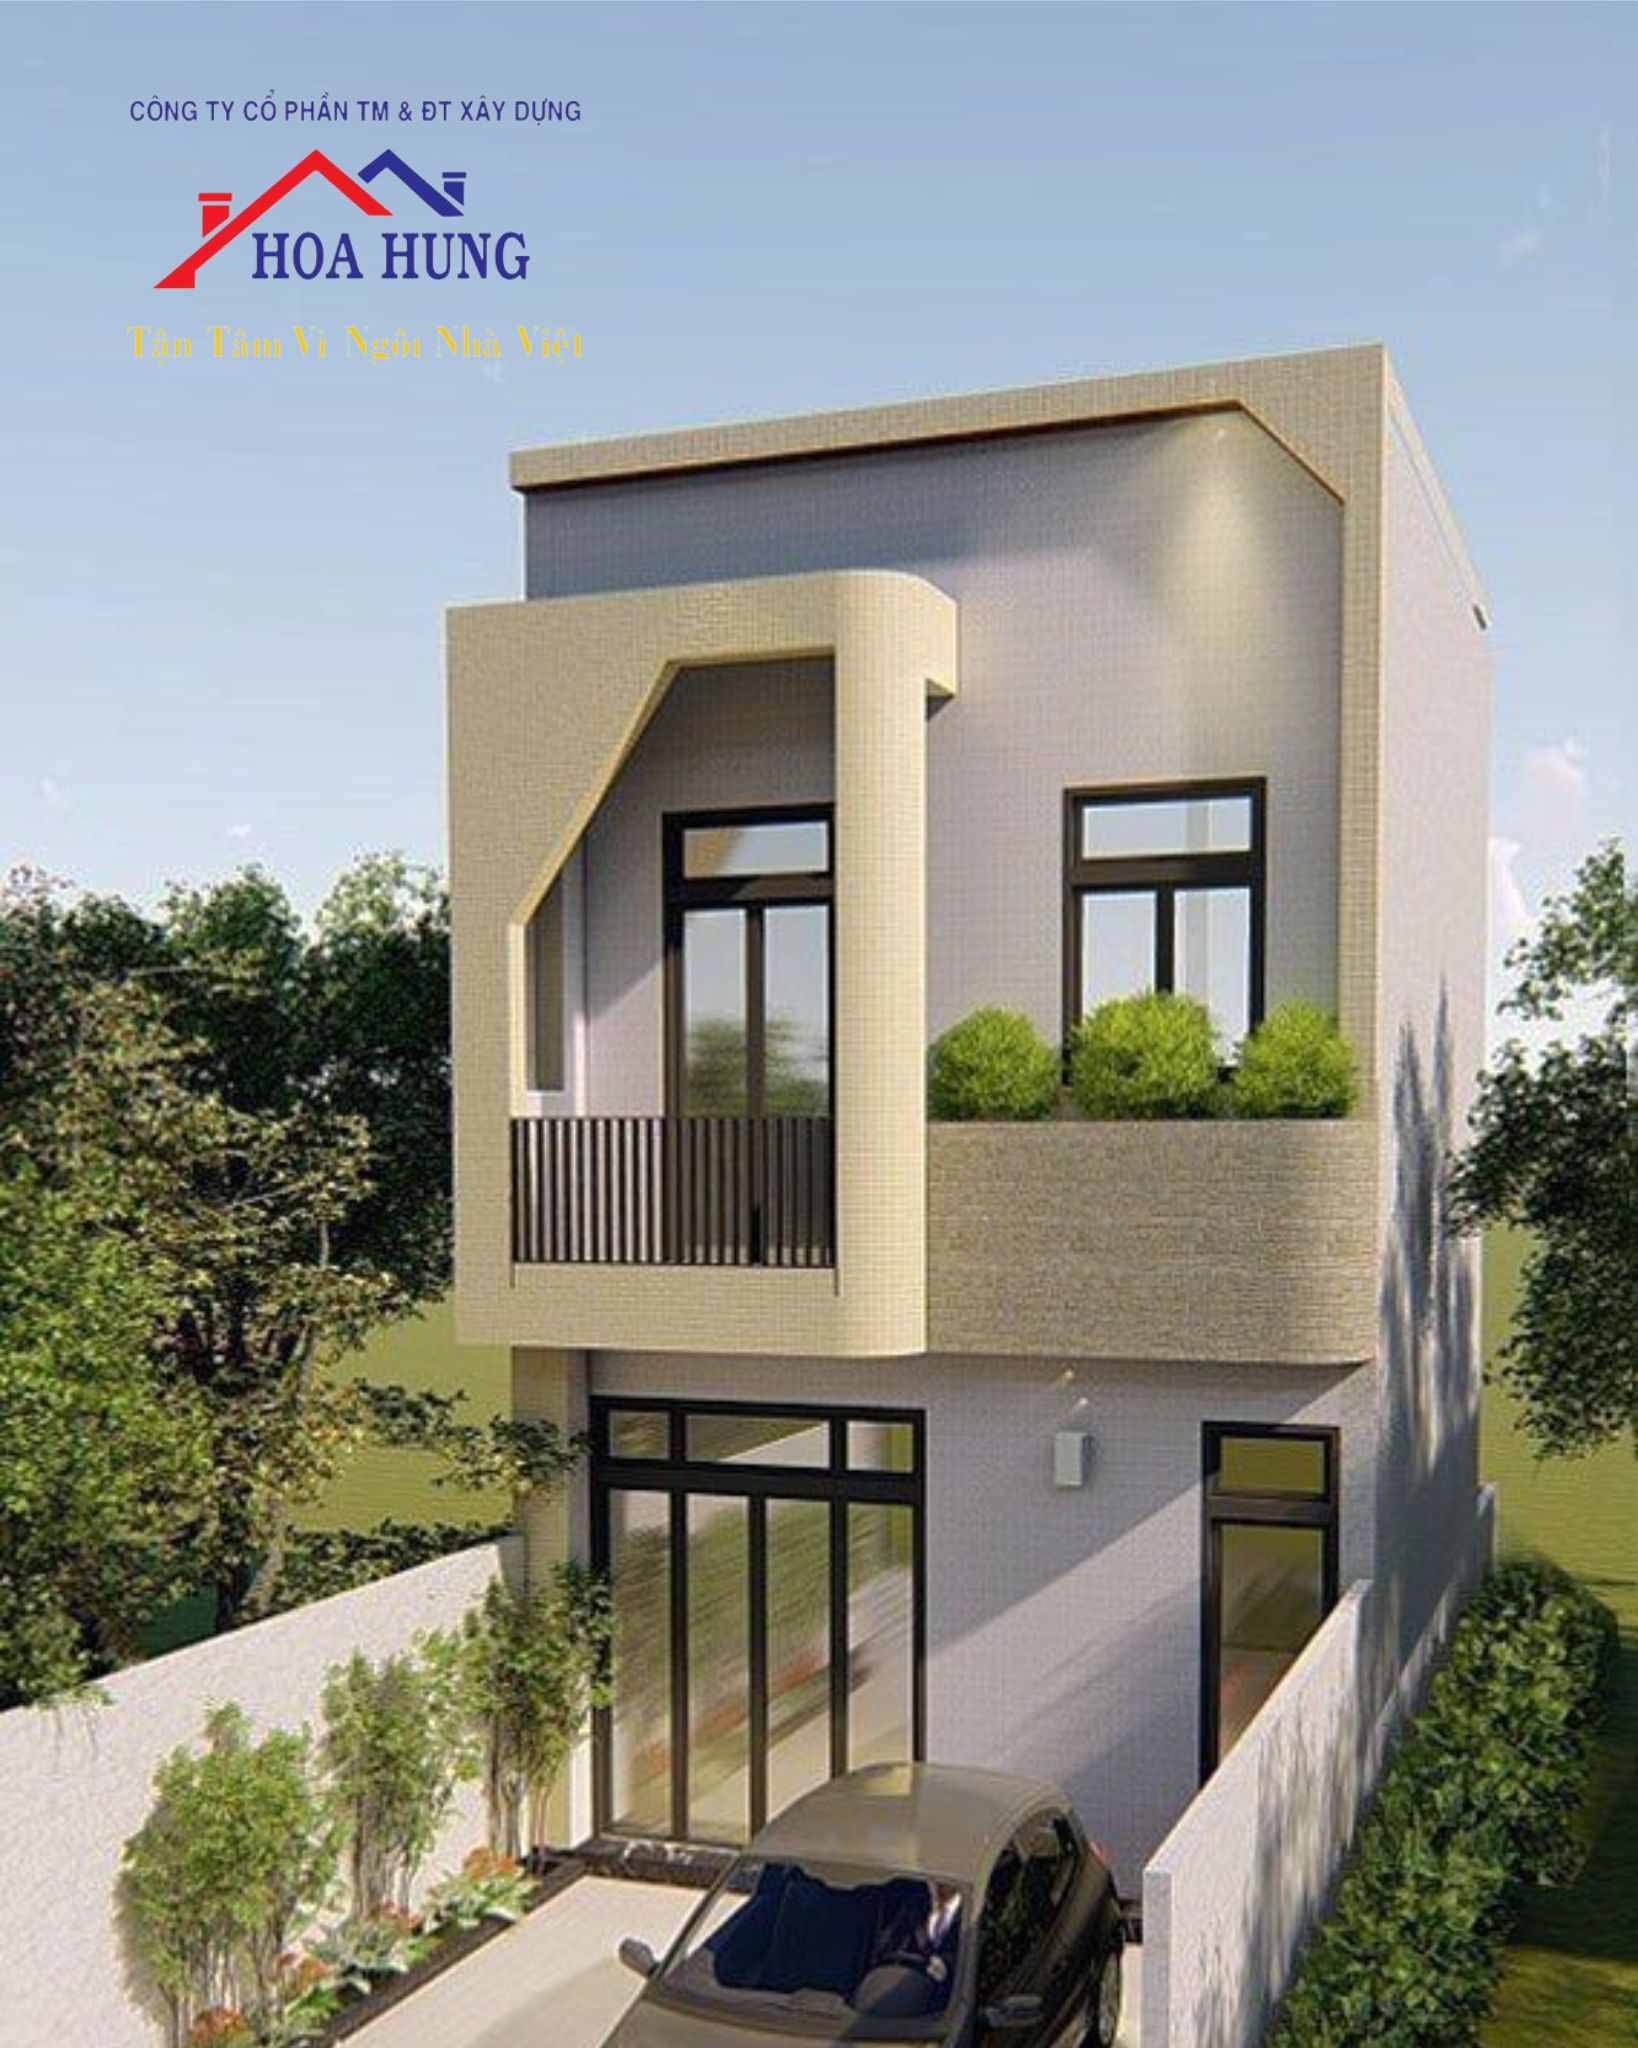 Xây dựng nhà 2 tầng tại quận Gò Vấp